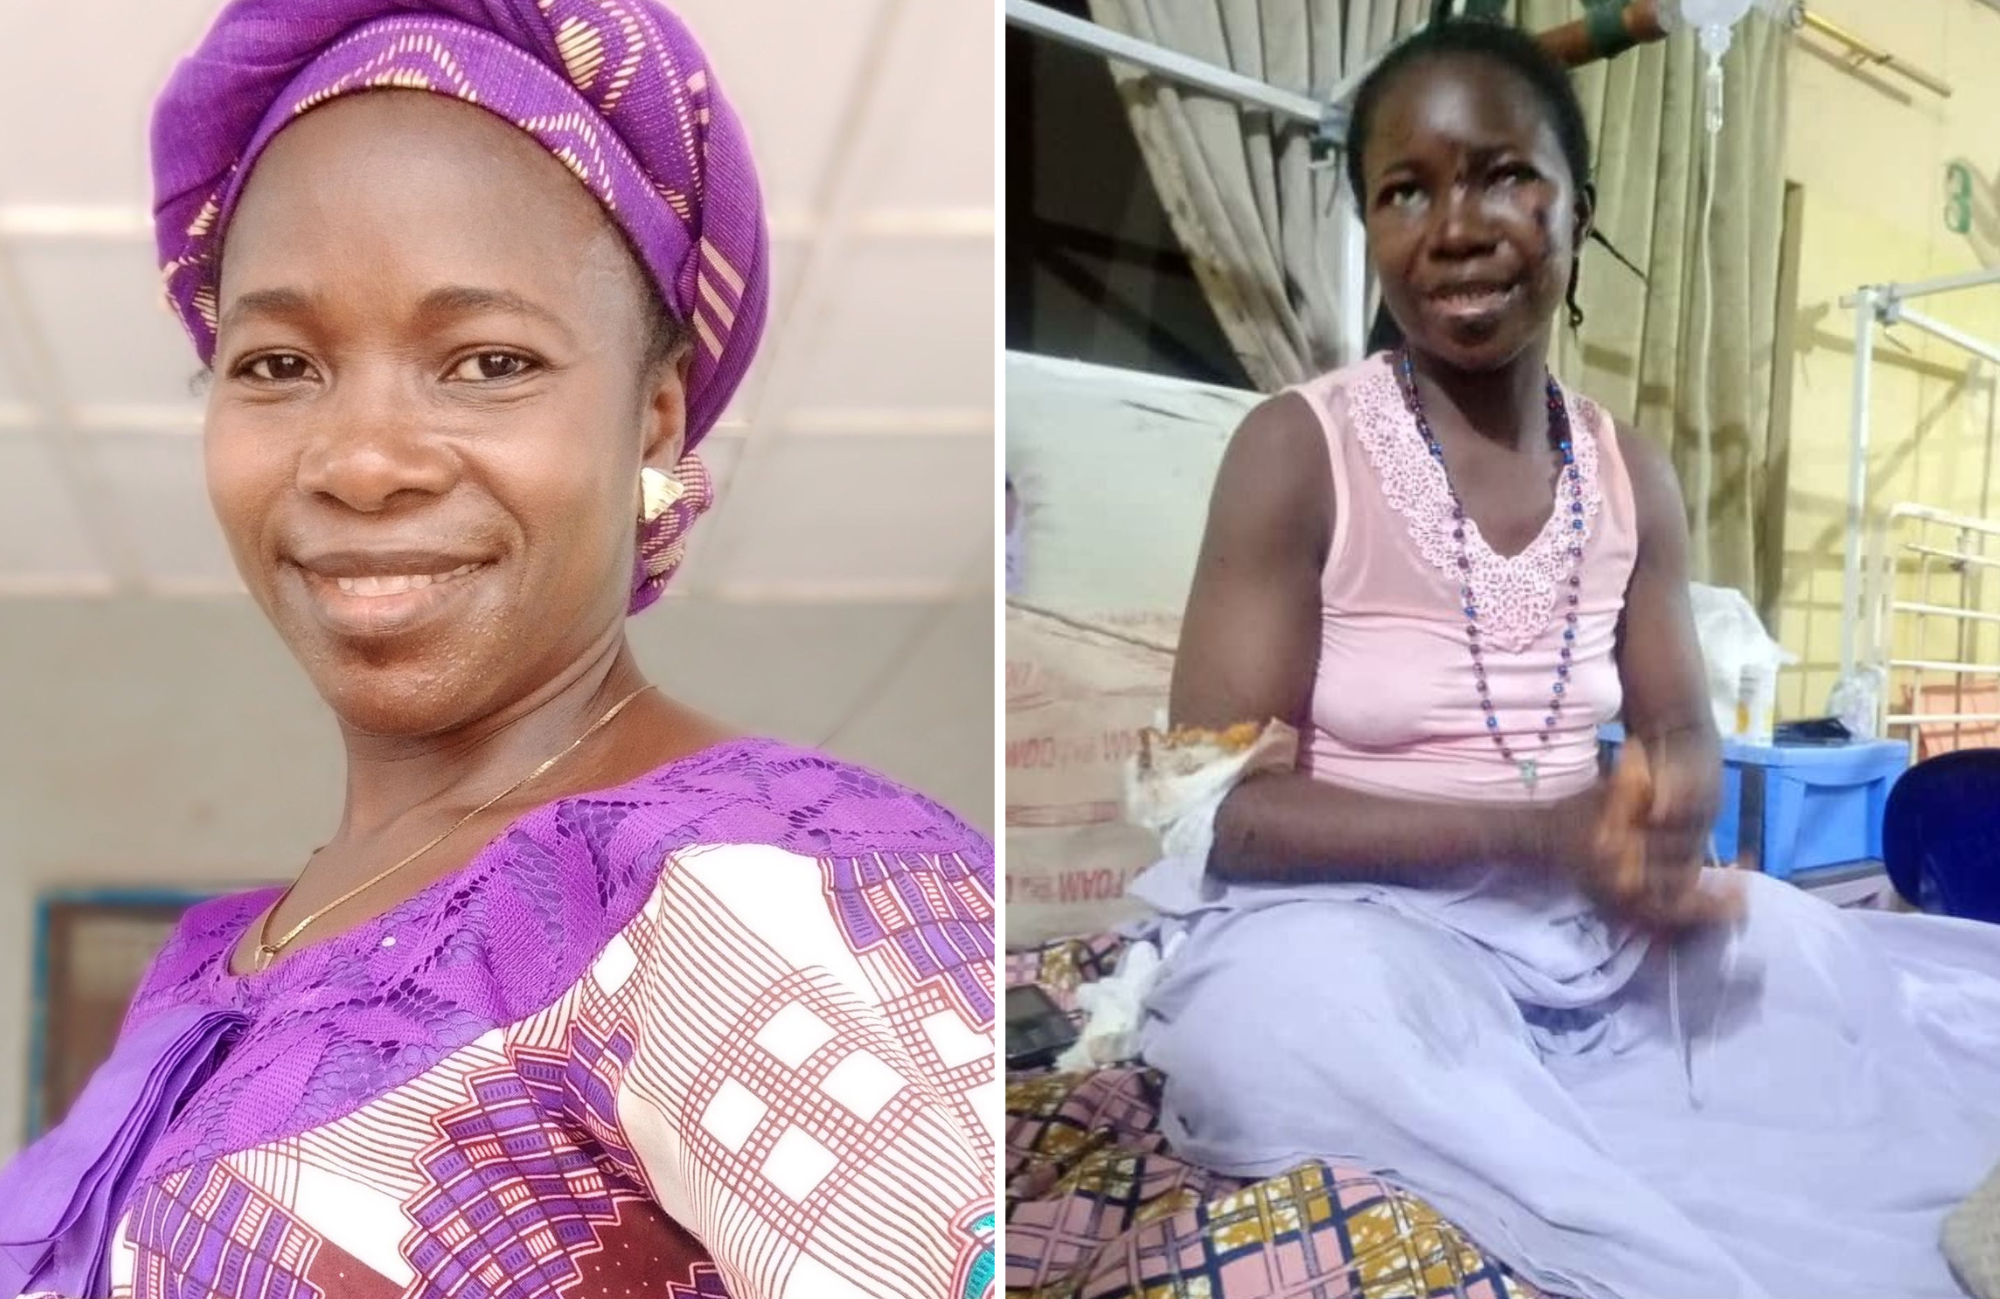 Sobrevivente do ataque em igreja na Nigéria recebe prêmio “Coragem para ser cristão”